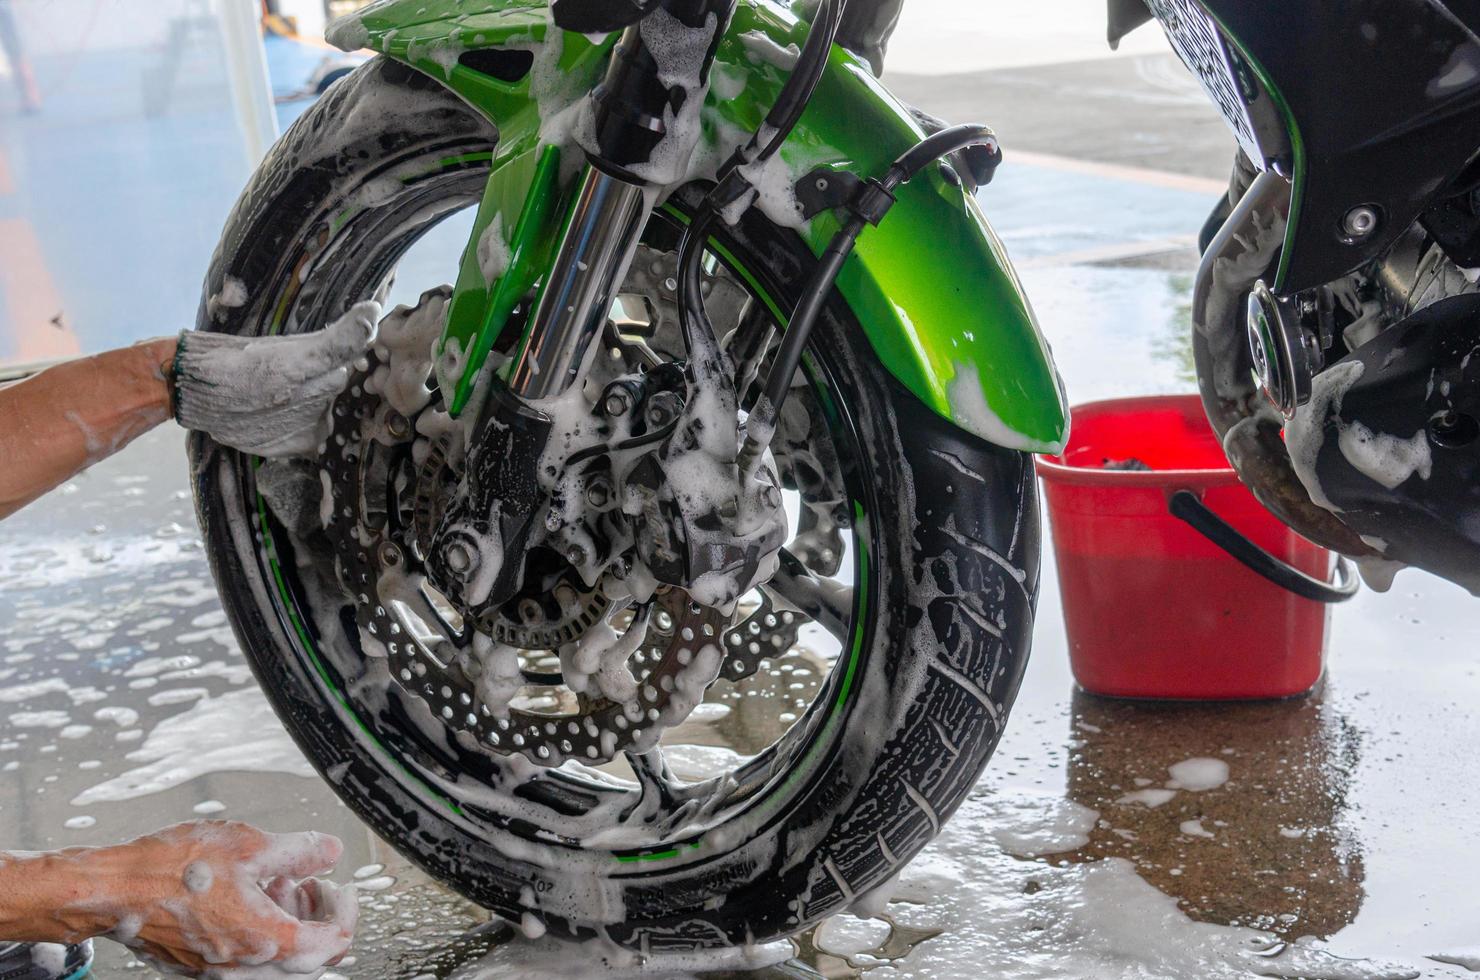 lavar a motocicleta no lava-rápido. foto